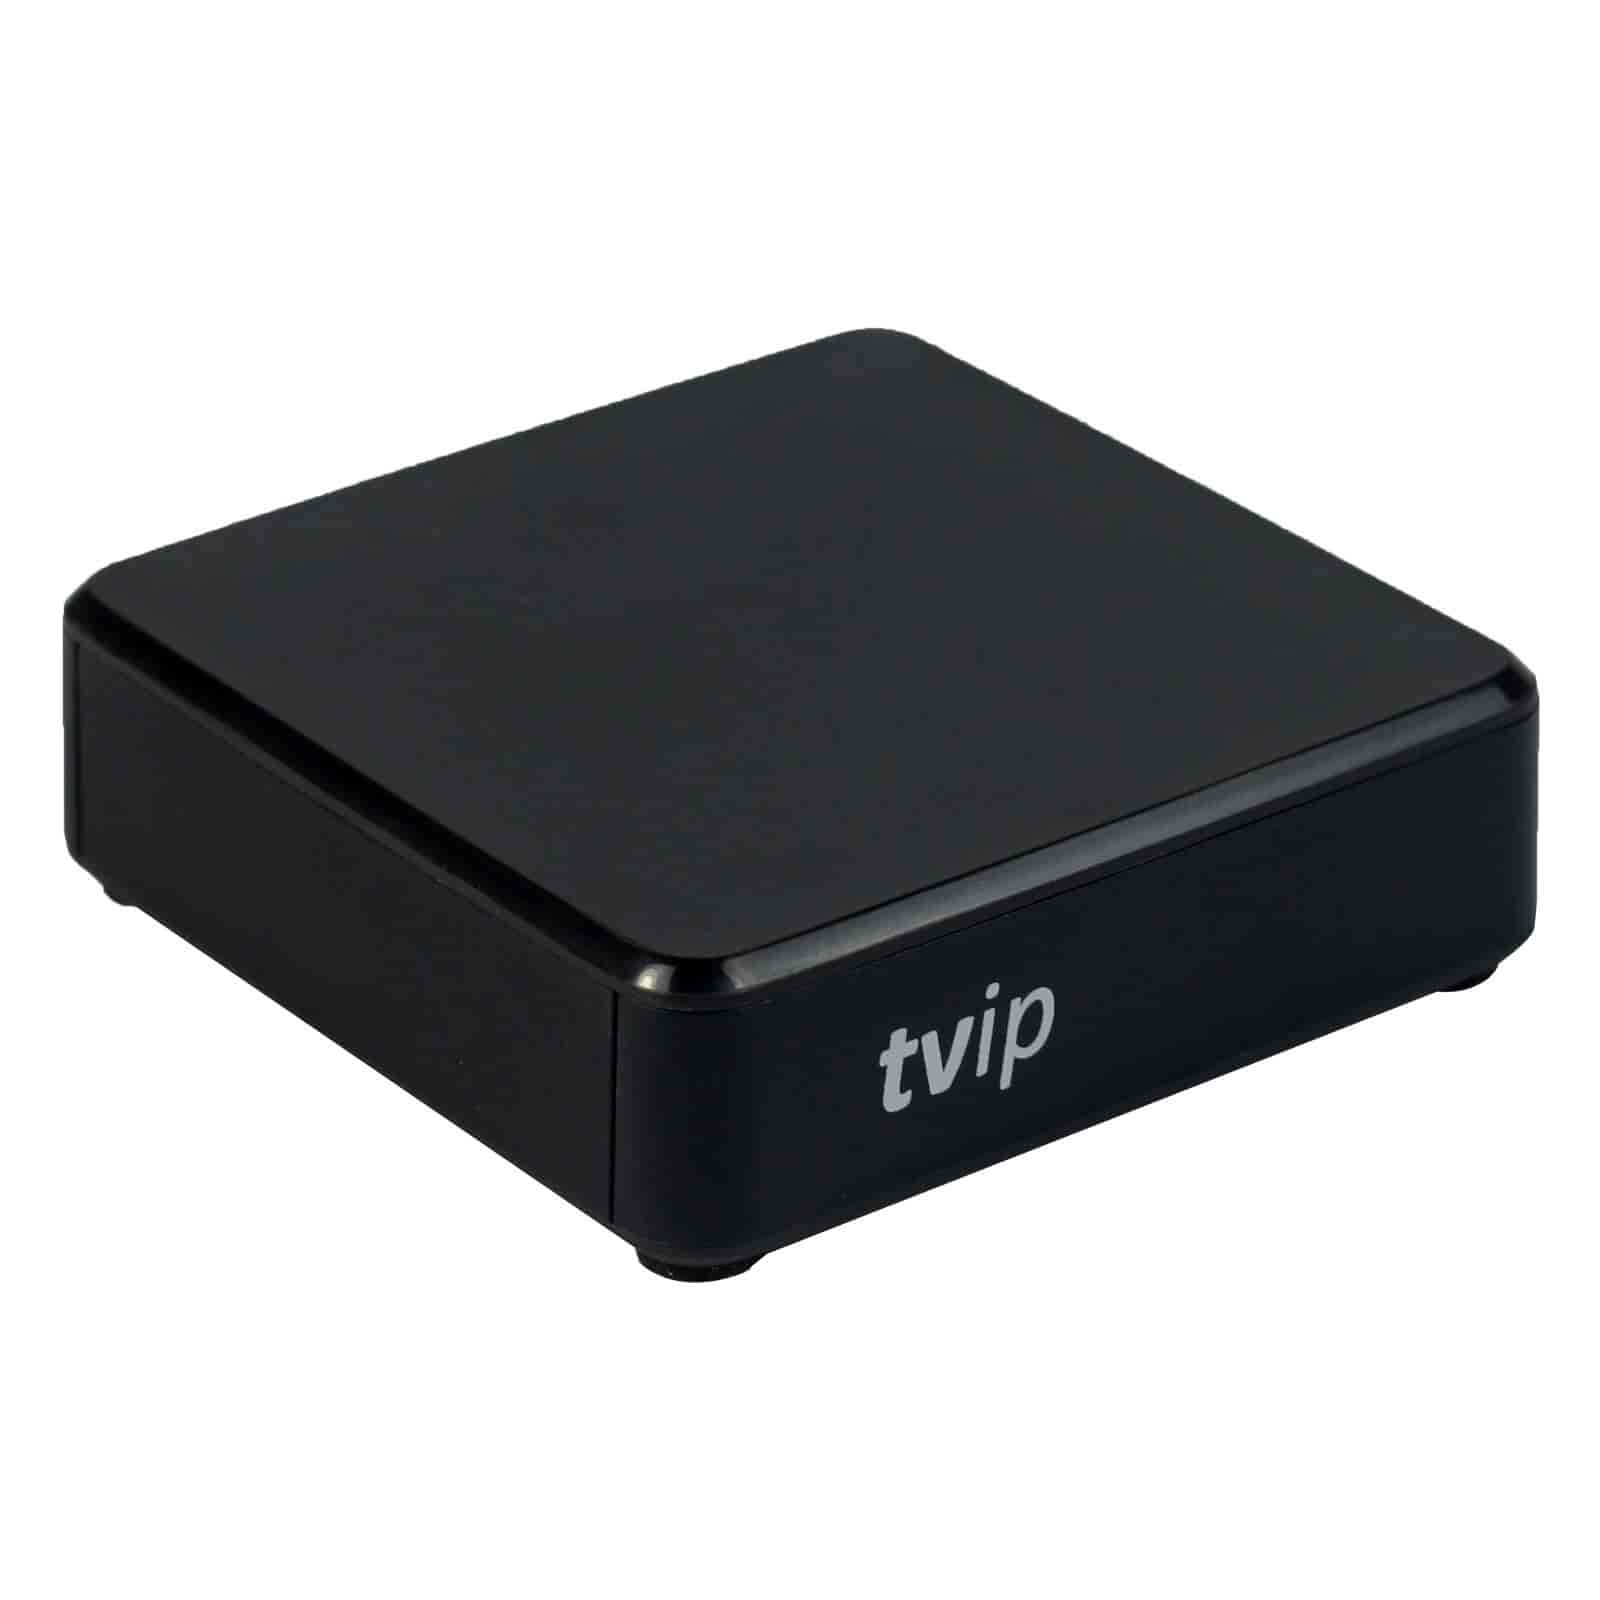 TVIP S-Box v.530 4K UHD IPTV/OTT Multimedie boksTVIPIPTV modtagere Sort TVIP S-Box v.530 er en entry-level IPTV-boks / Multimedia modtager til dig der skal igang med UHD 4K-verdenen. TVIP S-Box v.530 understøtter streaming af medieindhold, video on demand (VoD), digitale kanaler i høj kvalitet samt adgang til OTT-indhold såsom YouTube, Picasa, vejrudsigter og meget mere. TVIP 530 kan udvides med WiFi med en WiFi USB antenne. 